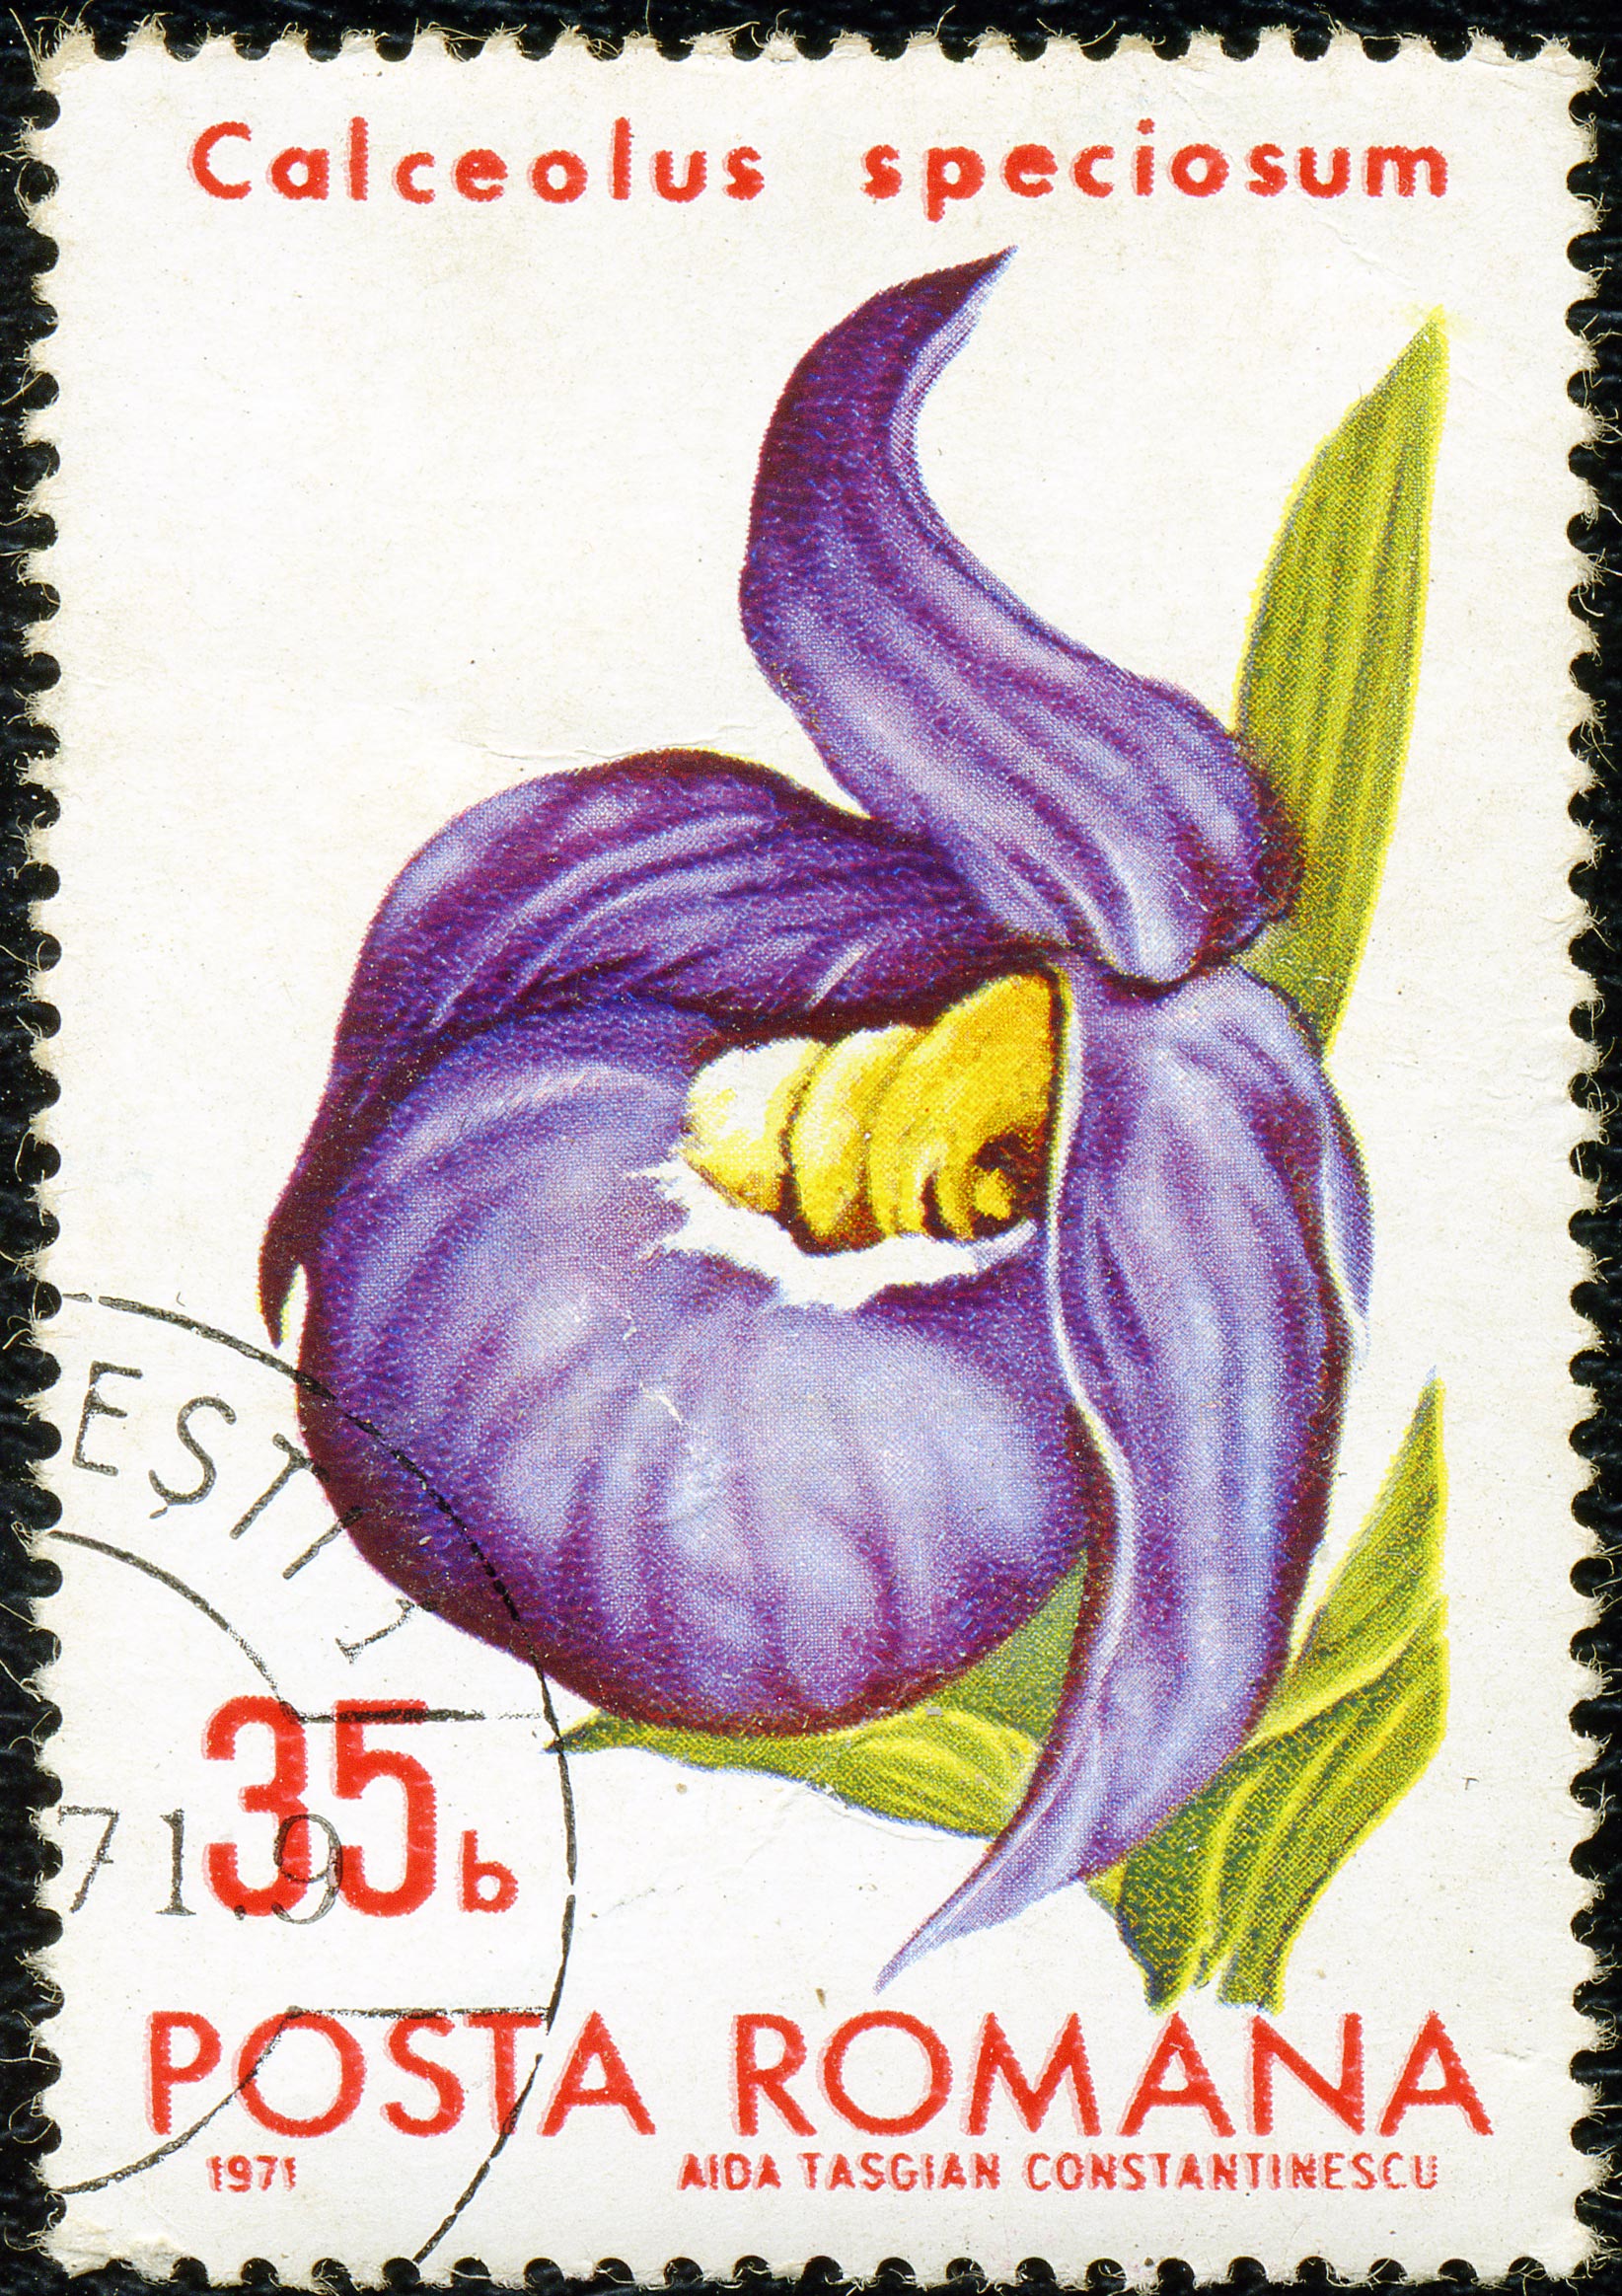 1971. Calceolus speciosum